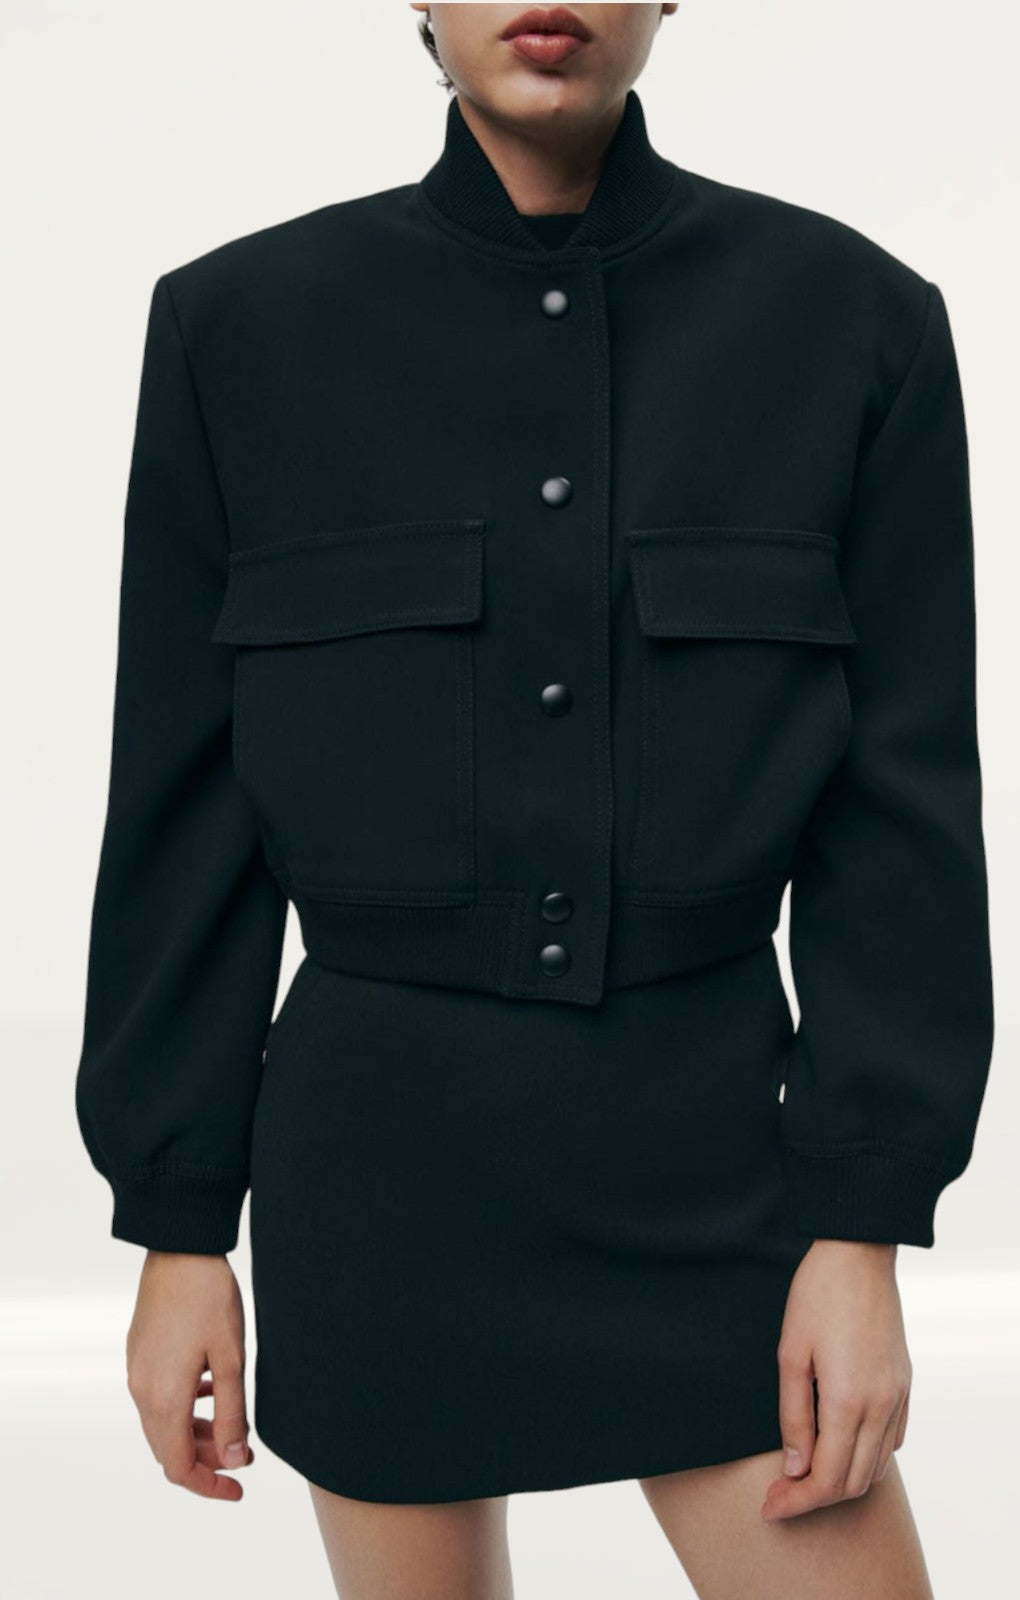 Zara Maxi Bomber Jacket With Pockets product image